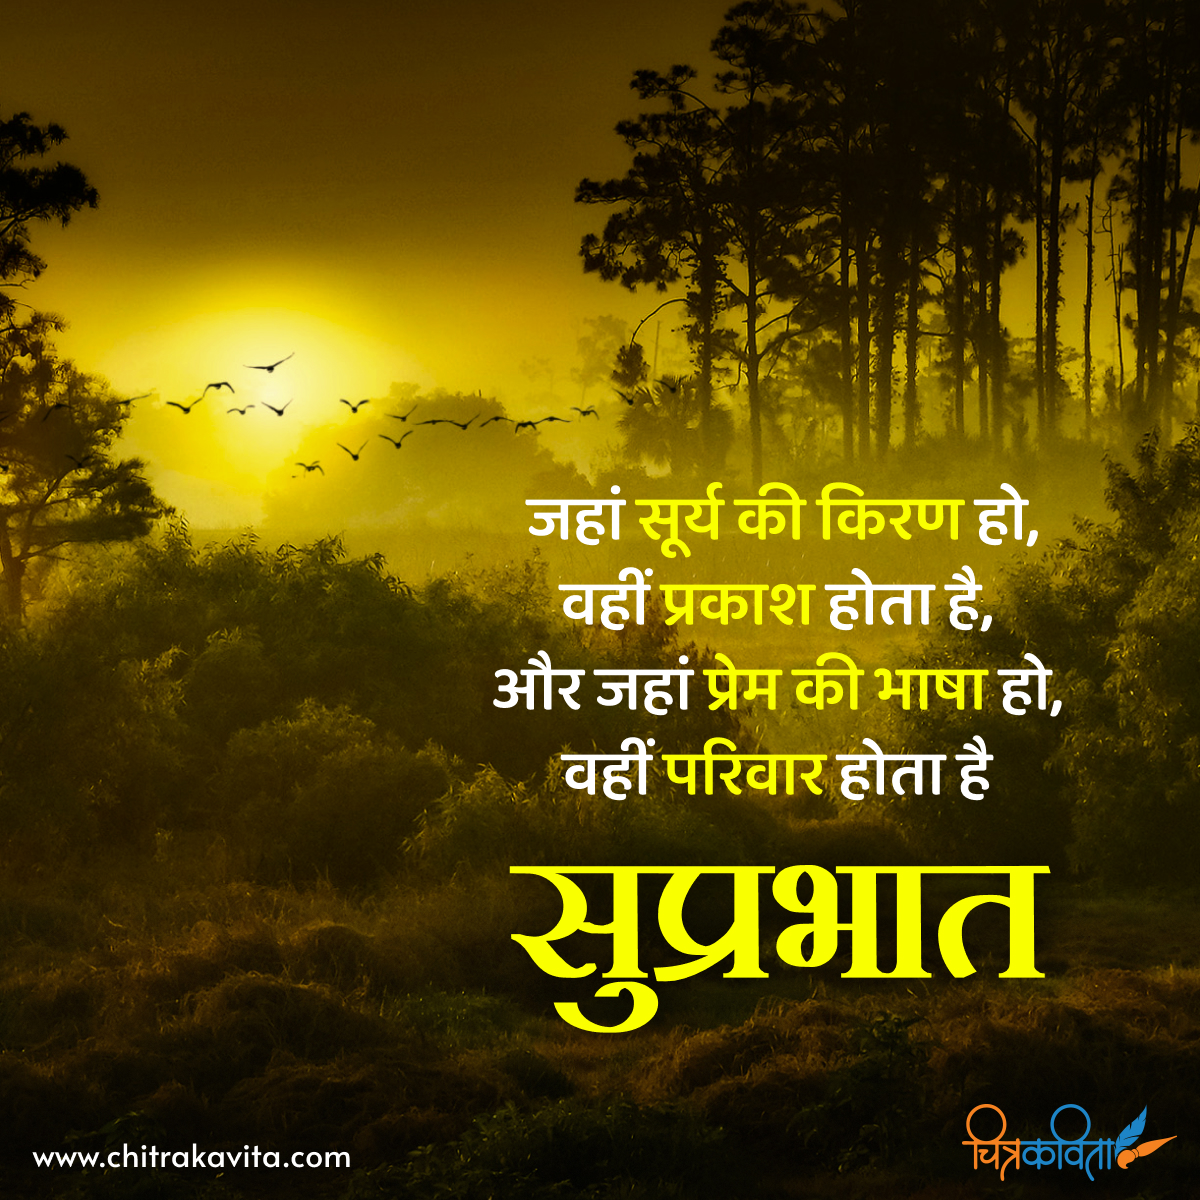 hindi good morning quotes, good morning status, hindi morning quotes, good morning quotes in hindi, suprabhat quotes